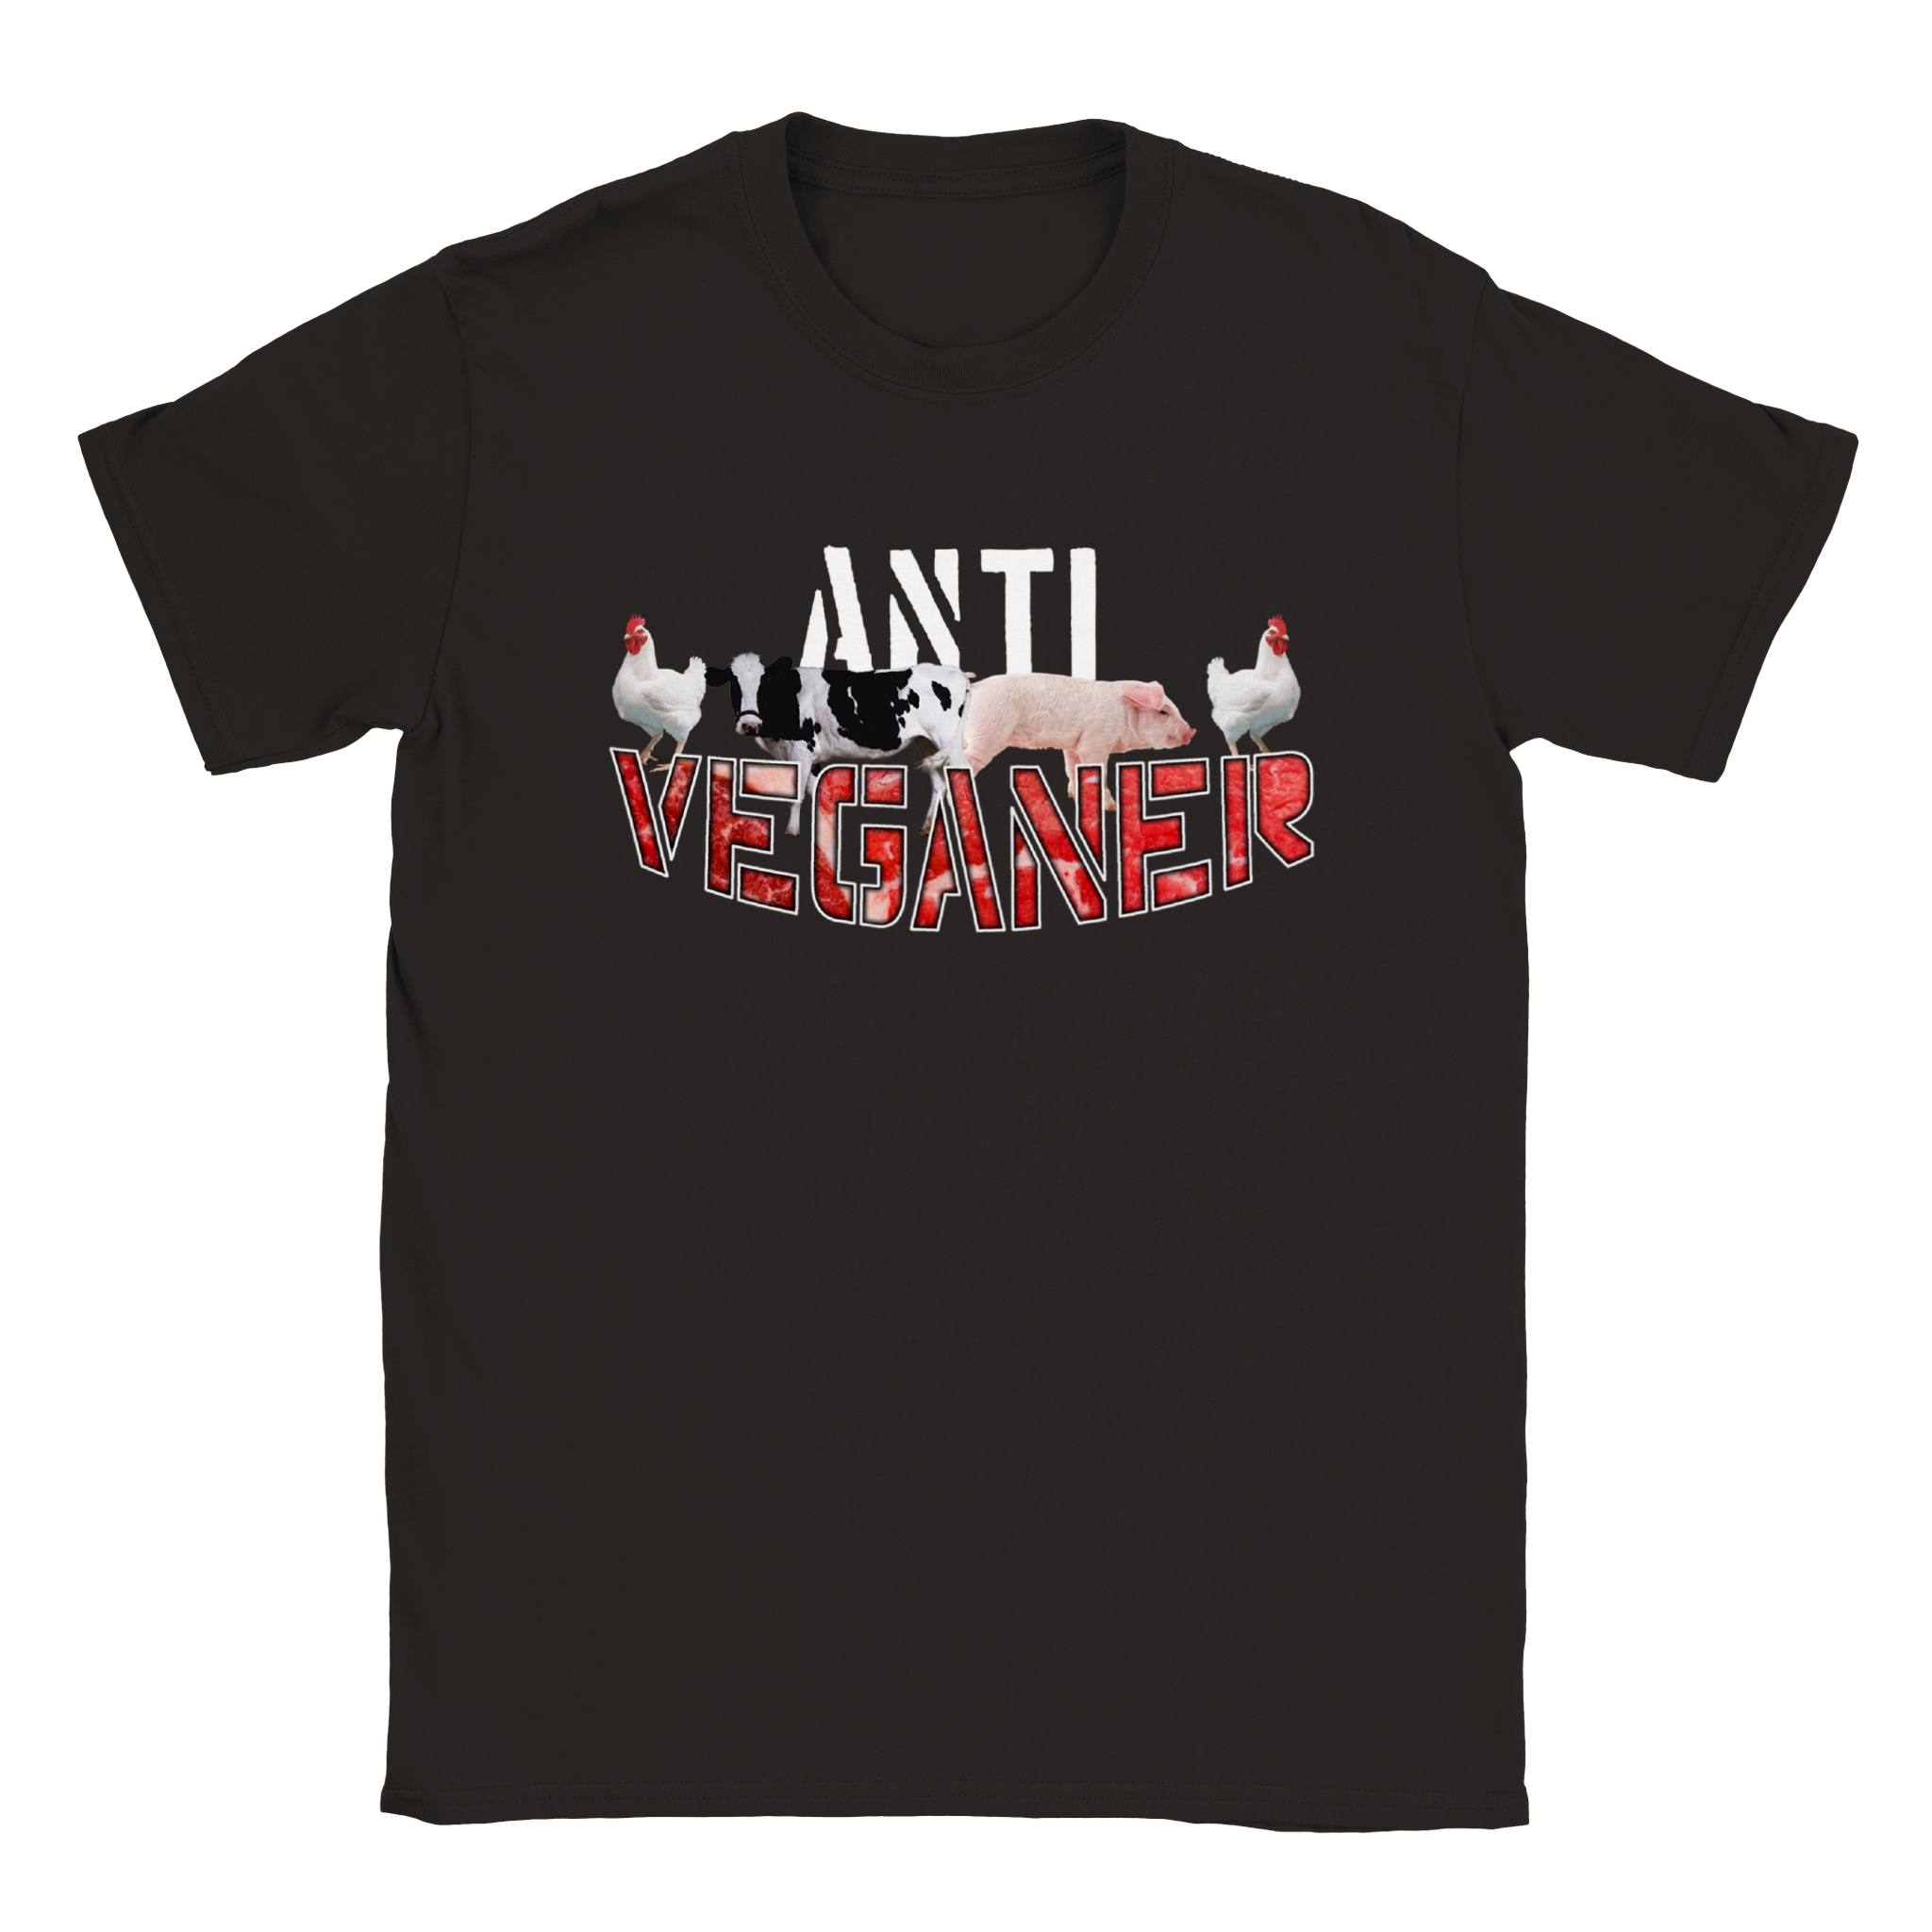 Anti Veganer shirt black